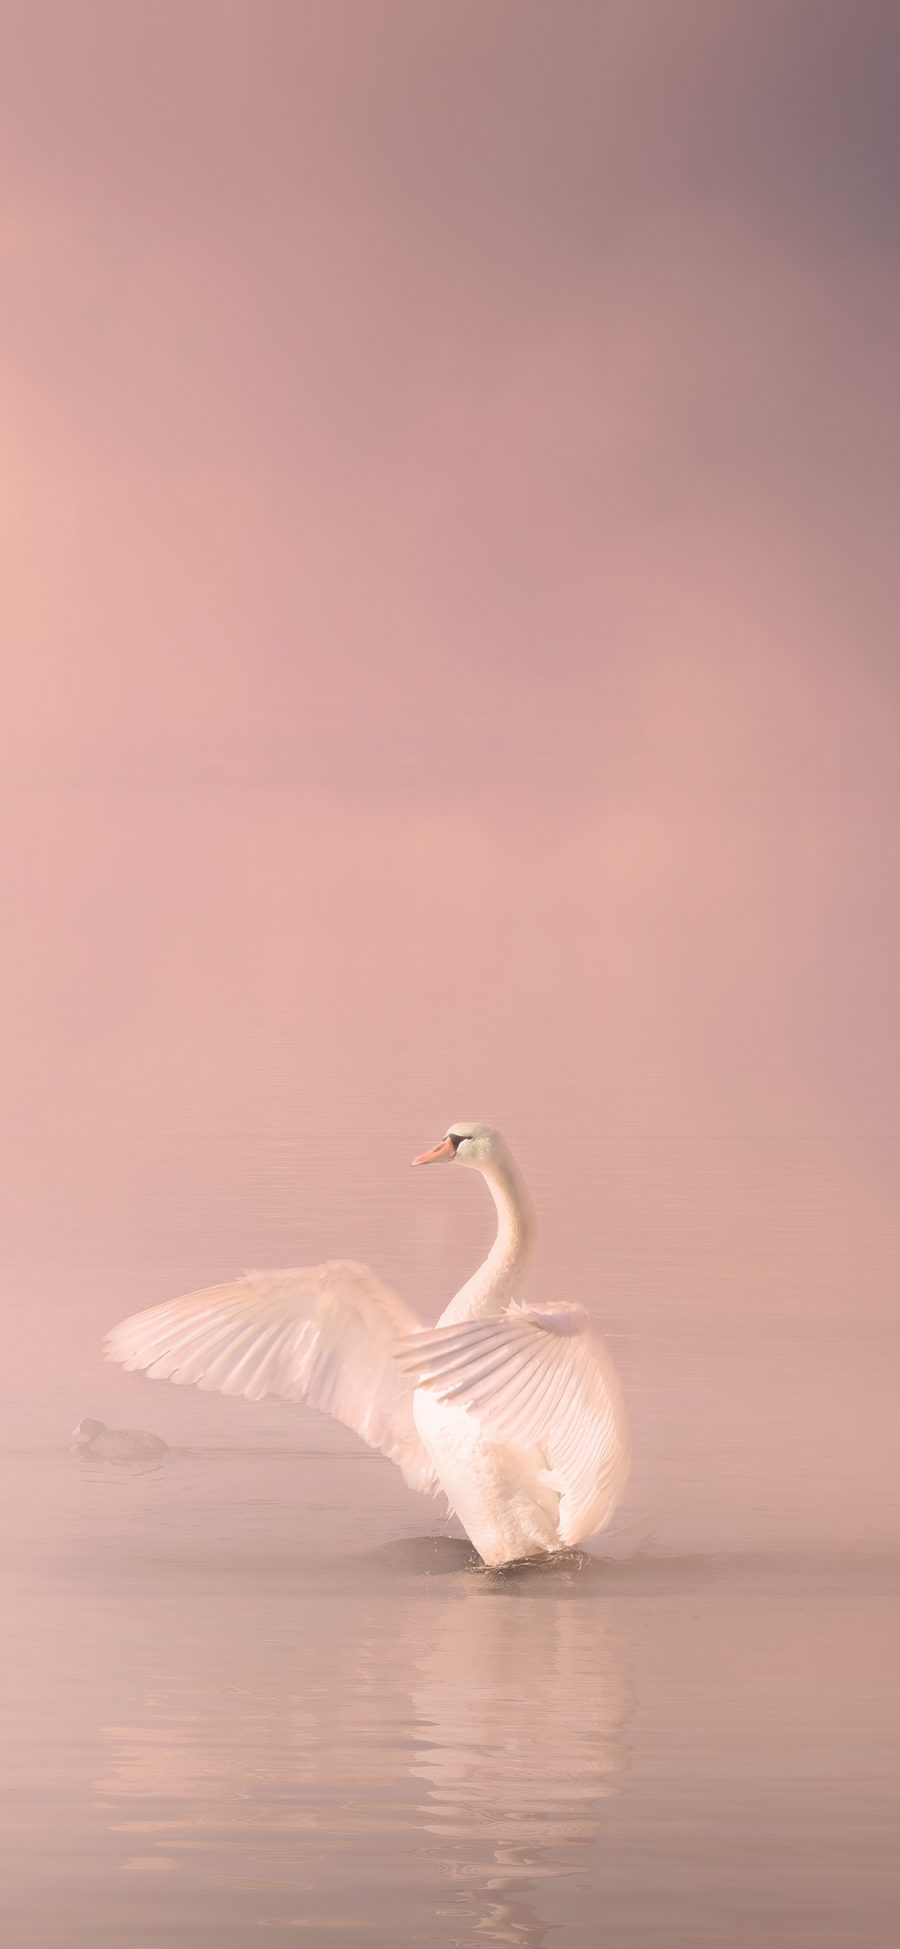 [2436×1125]天鹅 翅膀 湖水 粉色 美丽 苹果手机壁纸图片